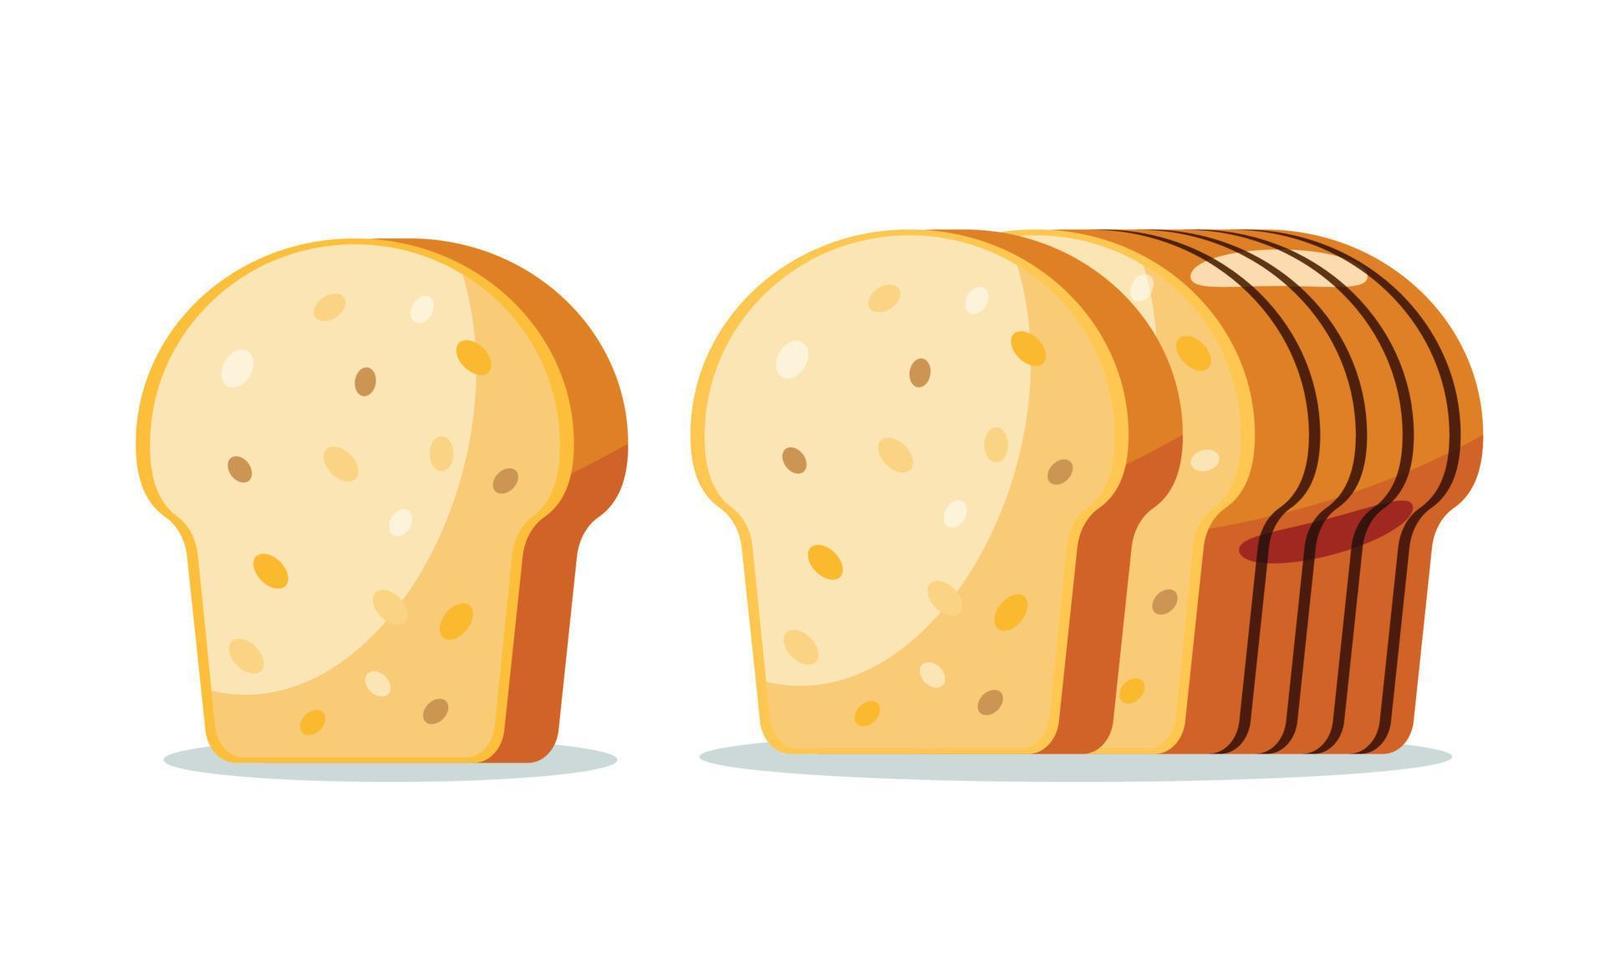 pan pan aislar ilustración vectorial vector